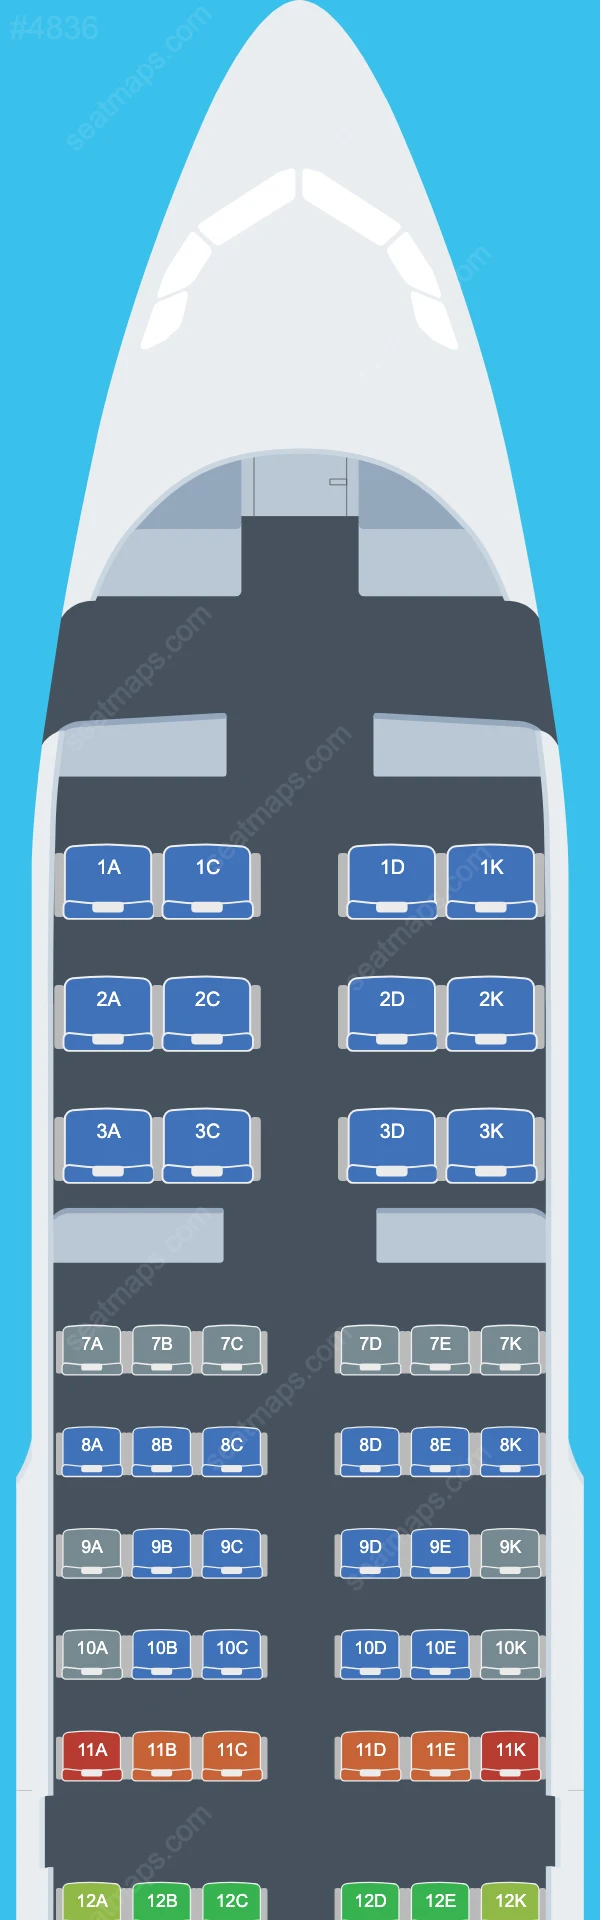 Avianca El Salvador Airbus A319 Seat Maps A319-100